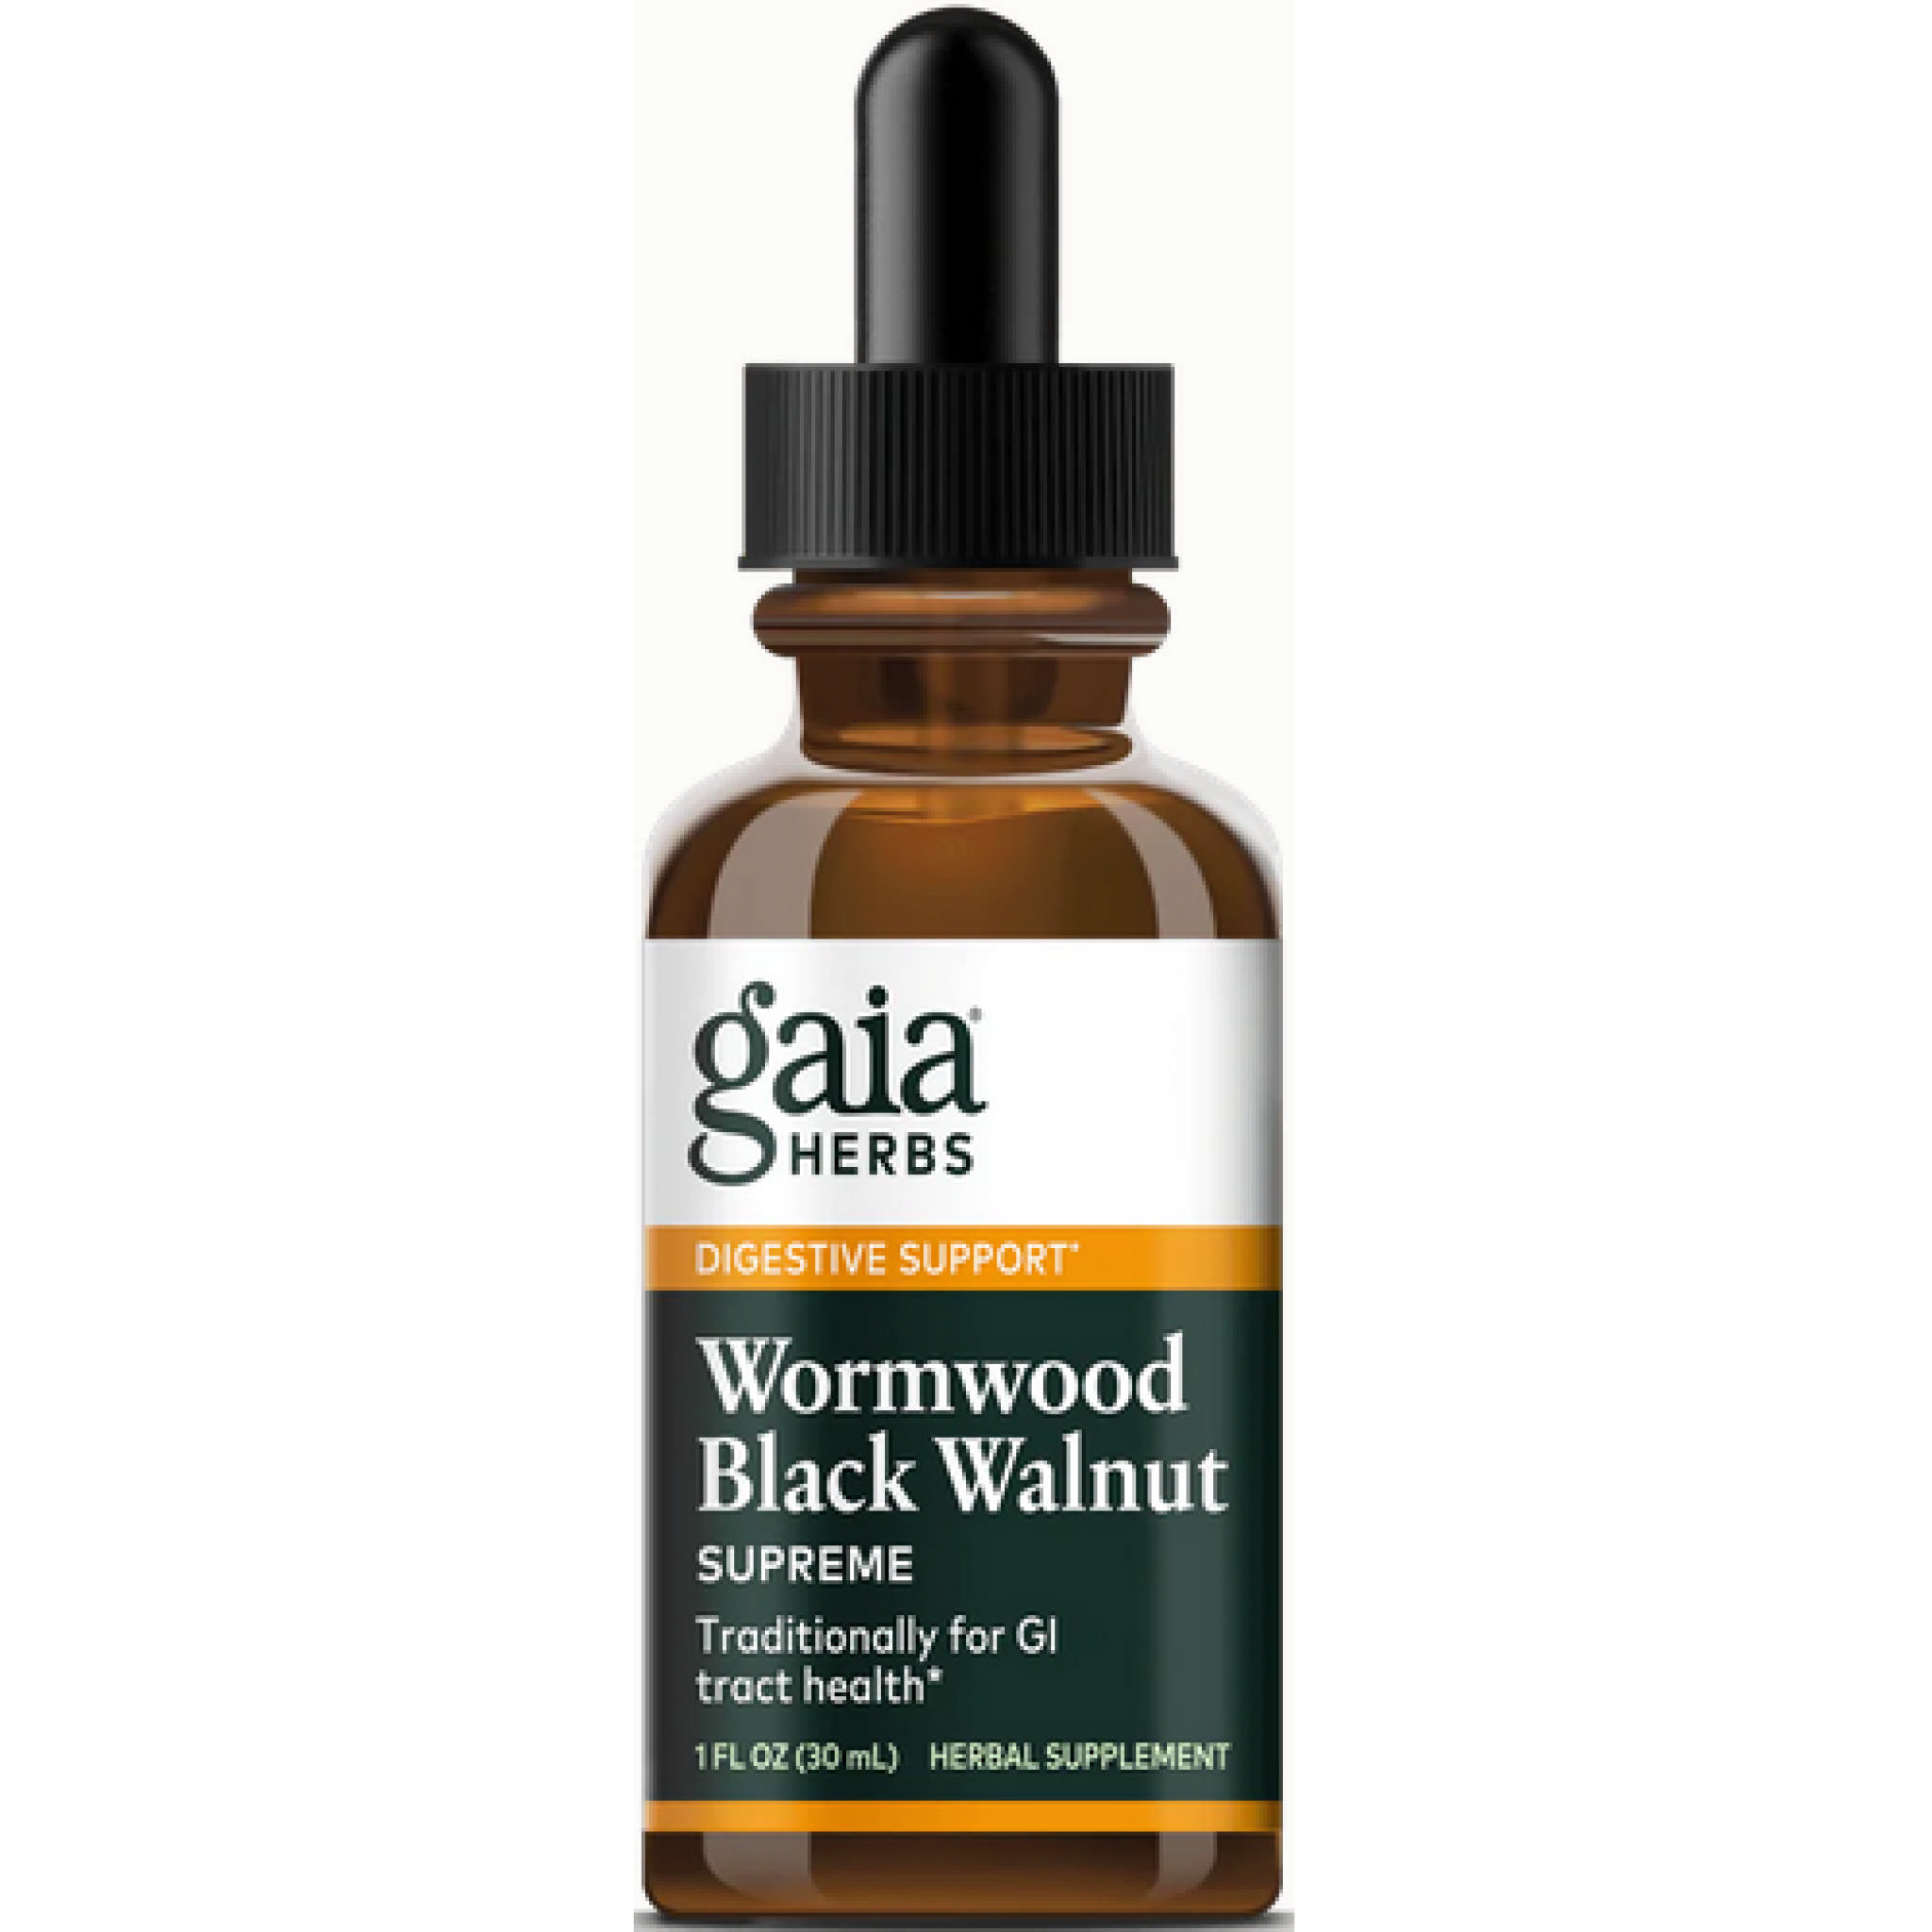 Gaia Herbs - Wormwood Black Walnut Supreme